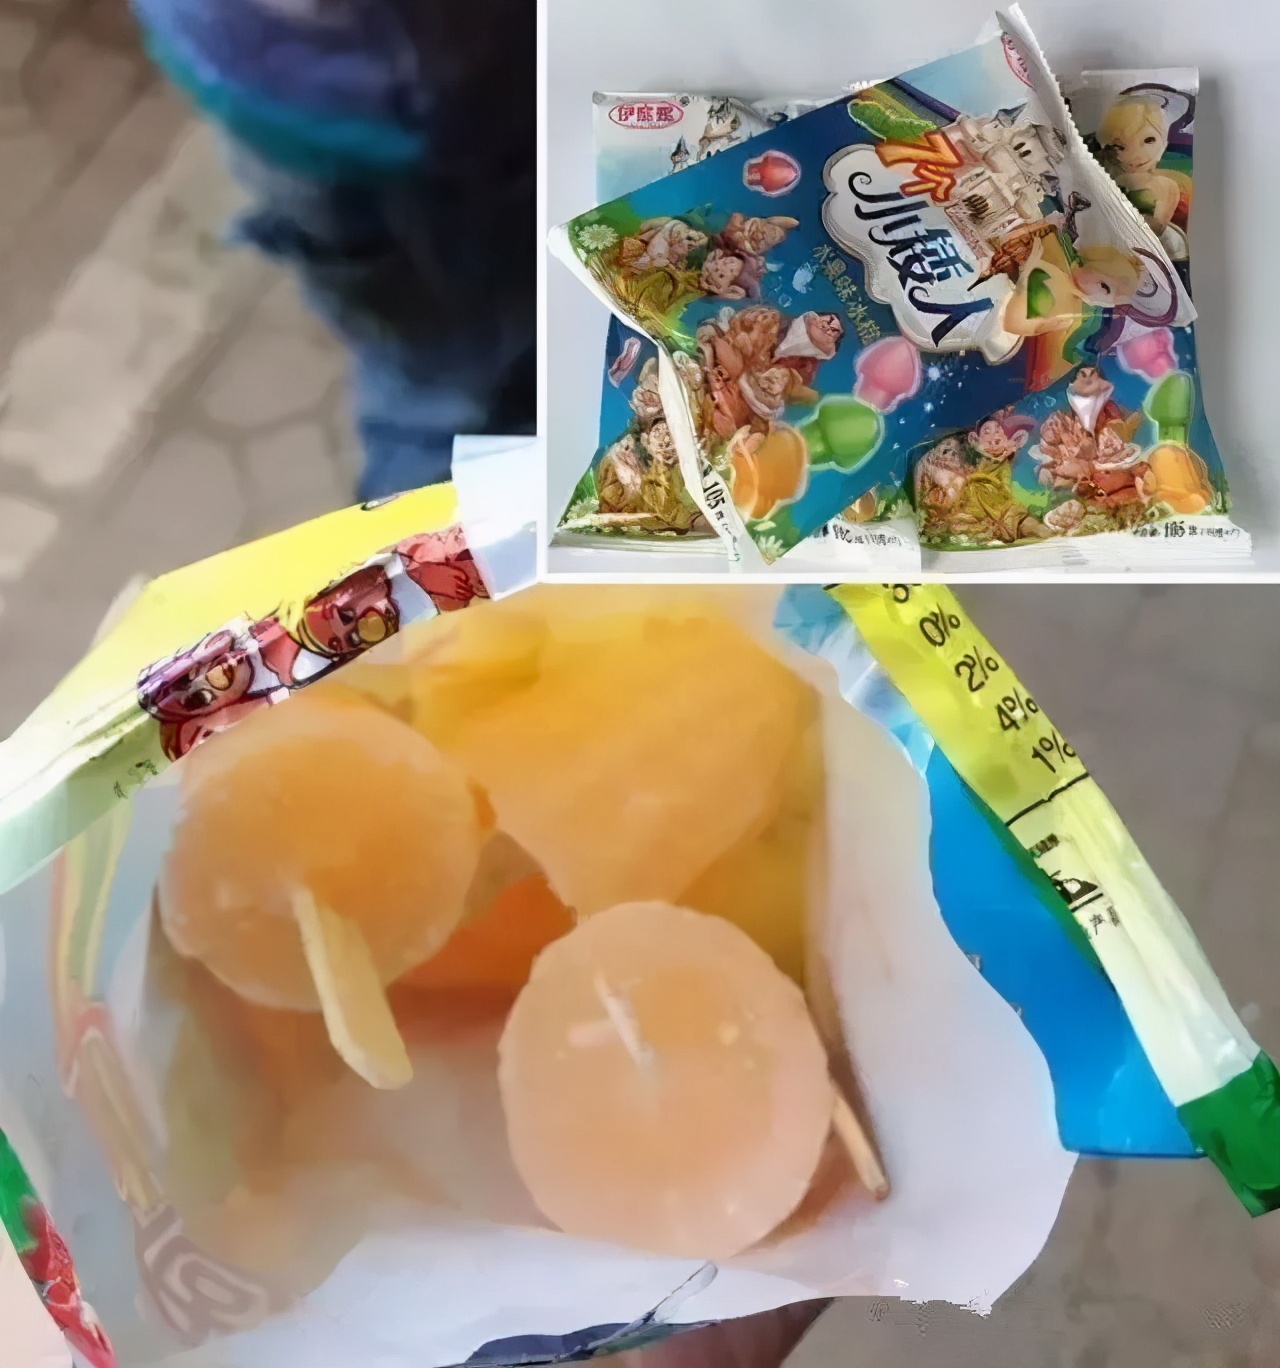 菠萝冰棍,泰国公益广告菠萝冰棍